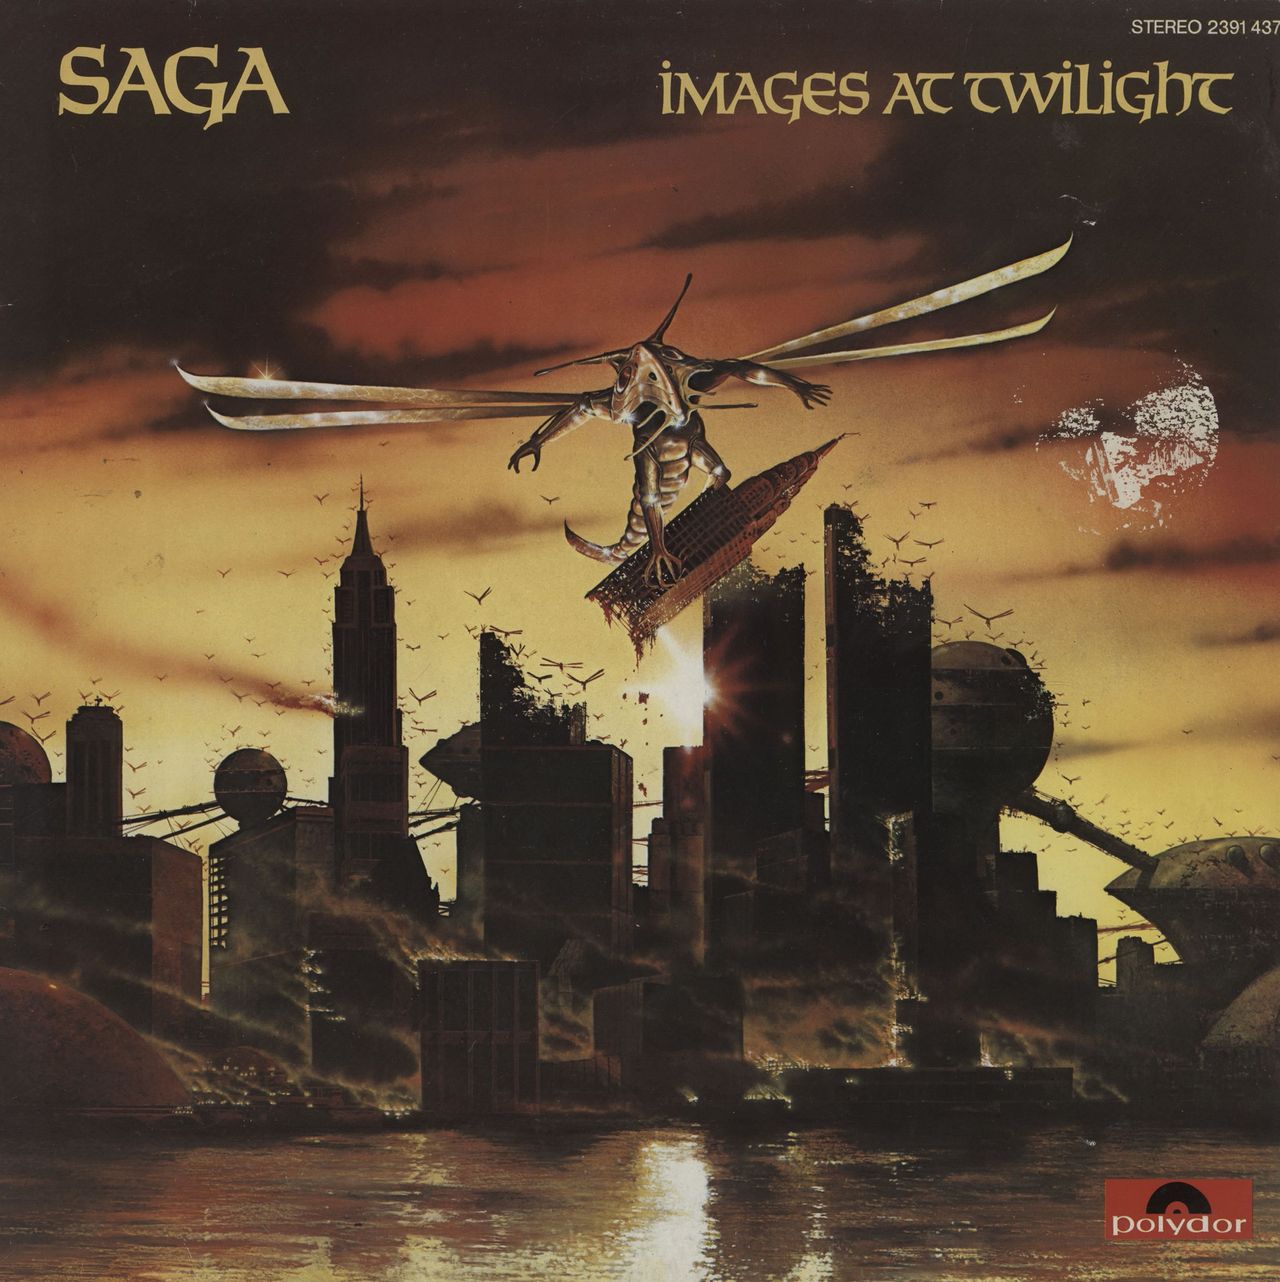 Saga Images At Twilight UK vinyl LP album (LP record) 2391437